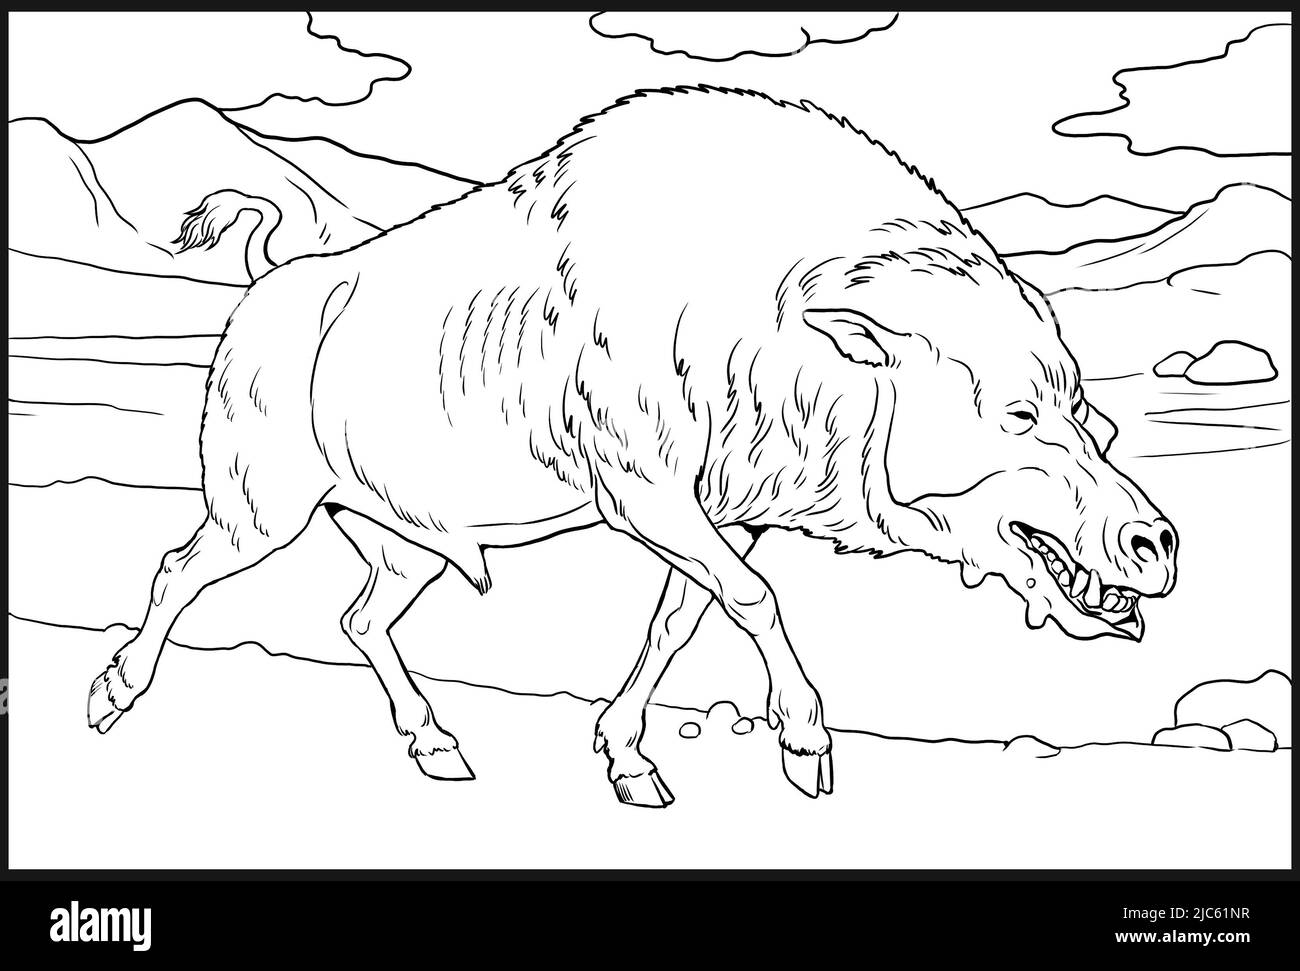 Prédateur préhistorique - daeodon. Page de coloriage avec animal éteint. Banque D'Images